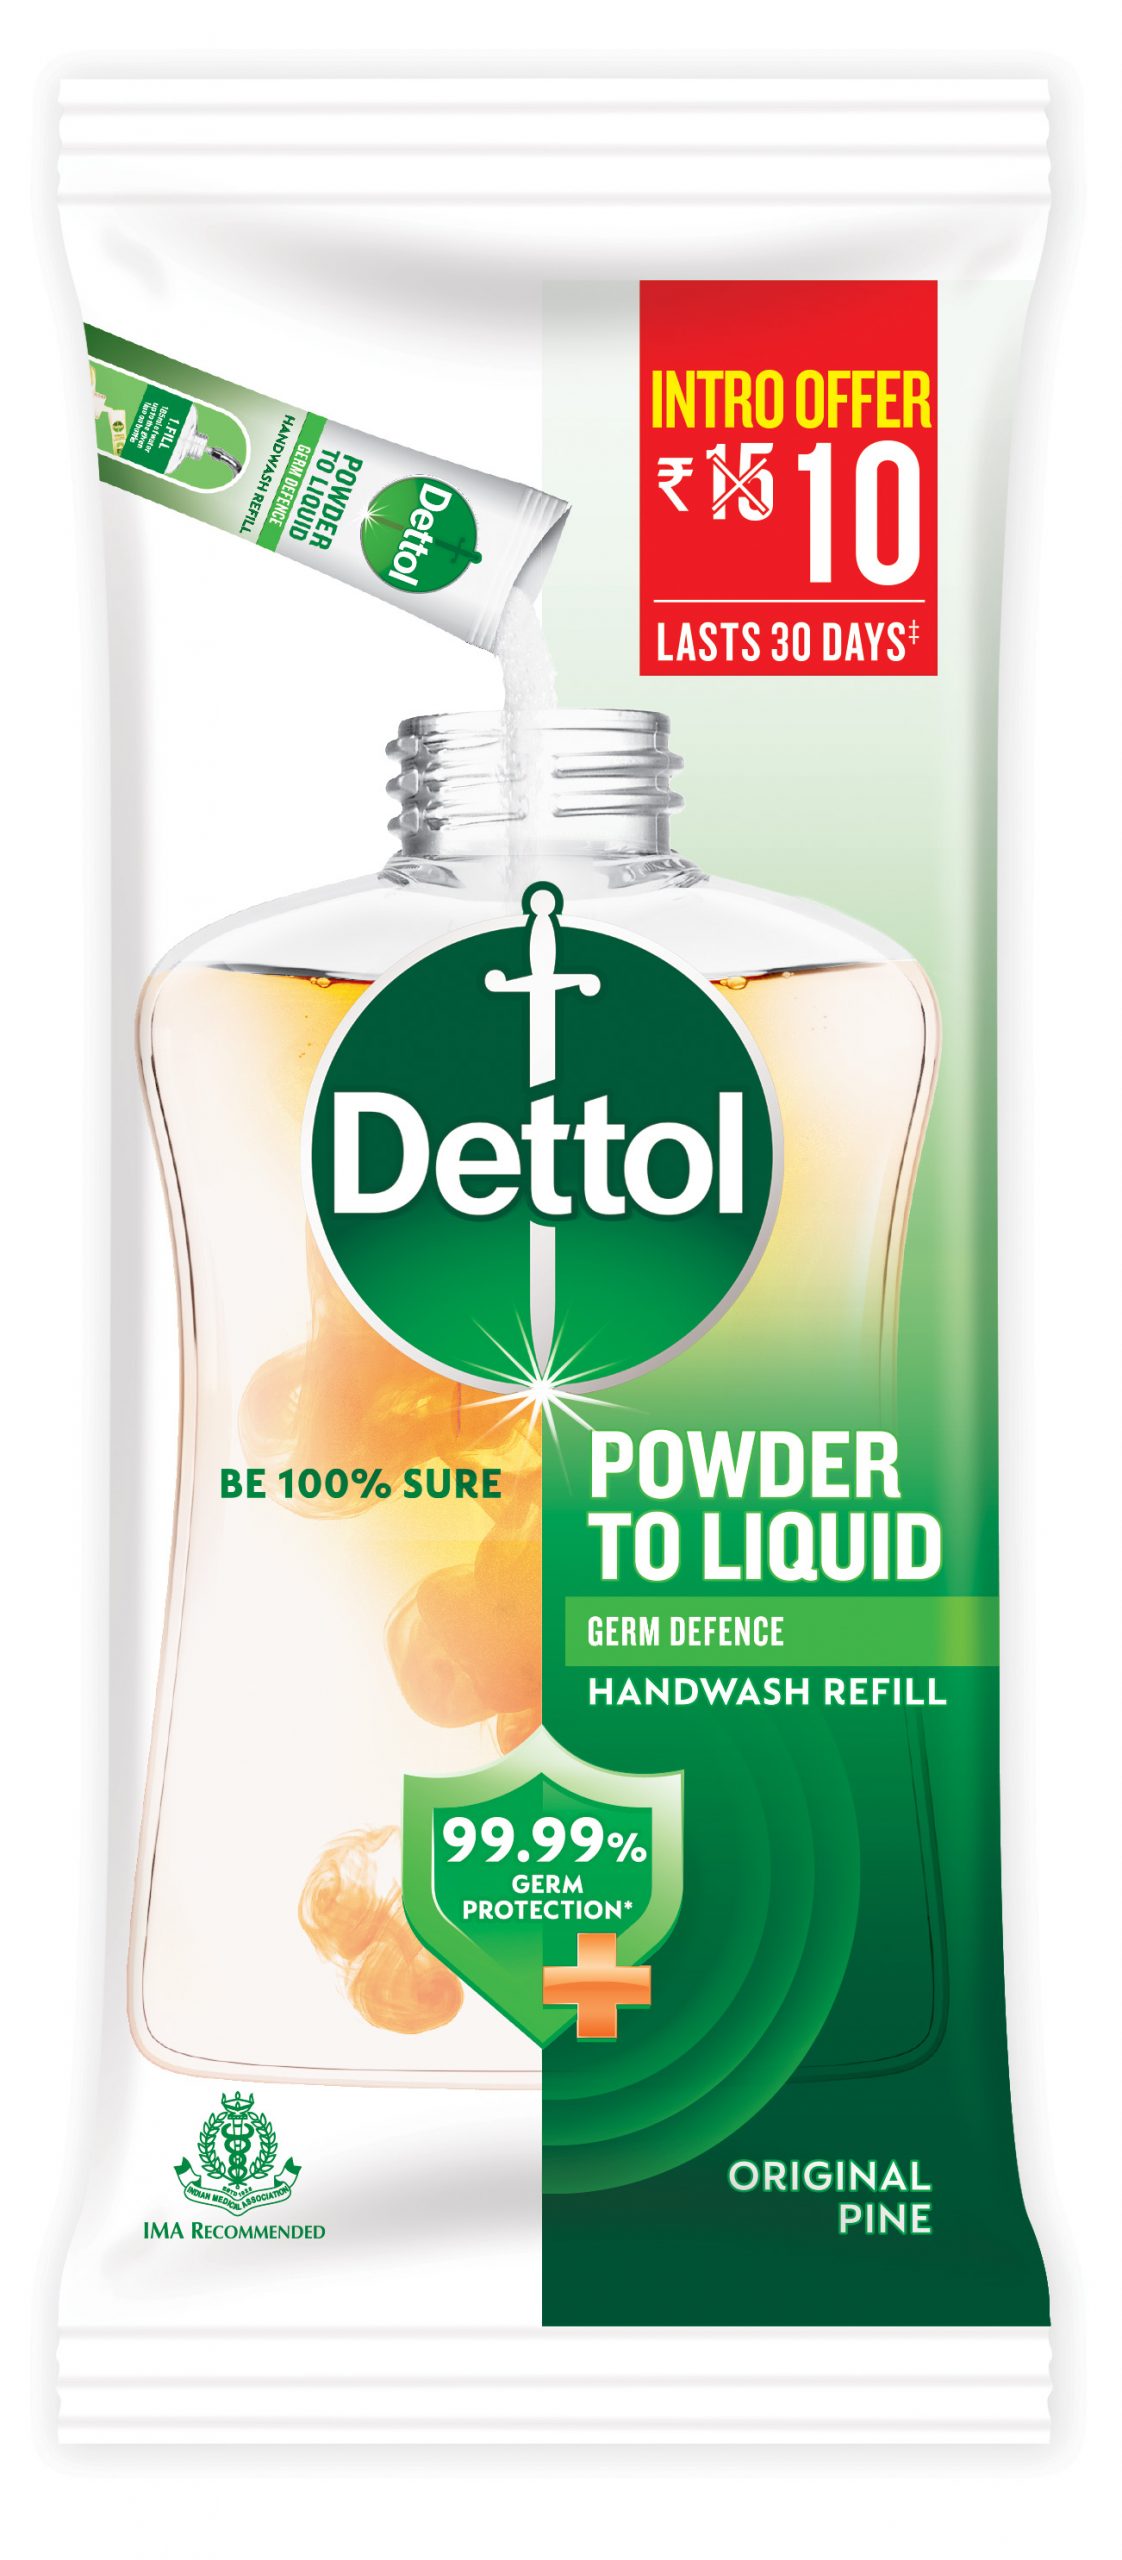 Oceanië Geschiktheid bezoeker Dettol expands its product portfolio with the launch of Dettol powder-to-liquid  handwash in India | APN News